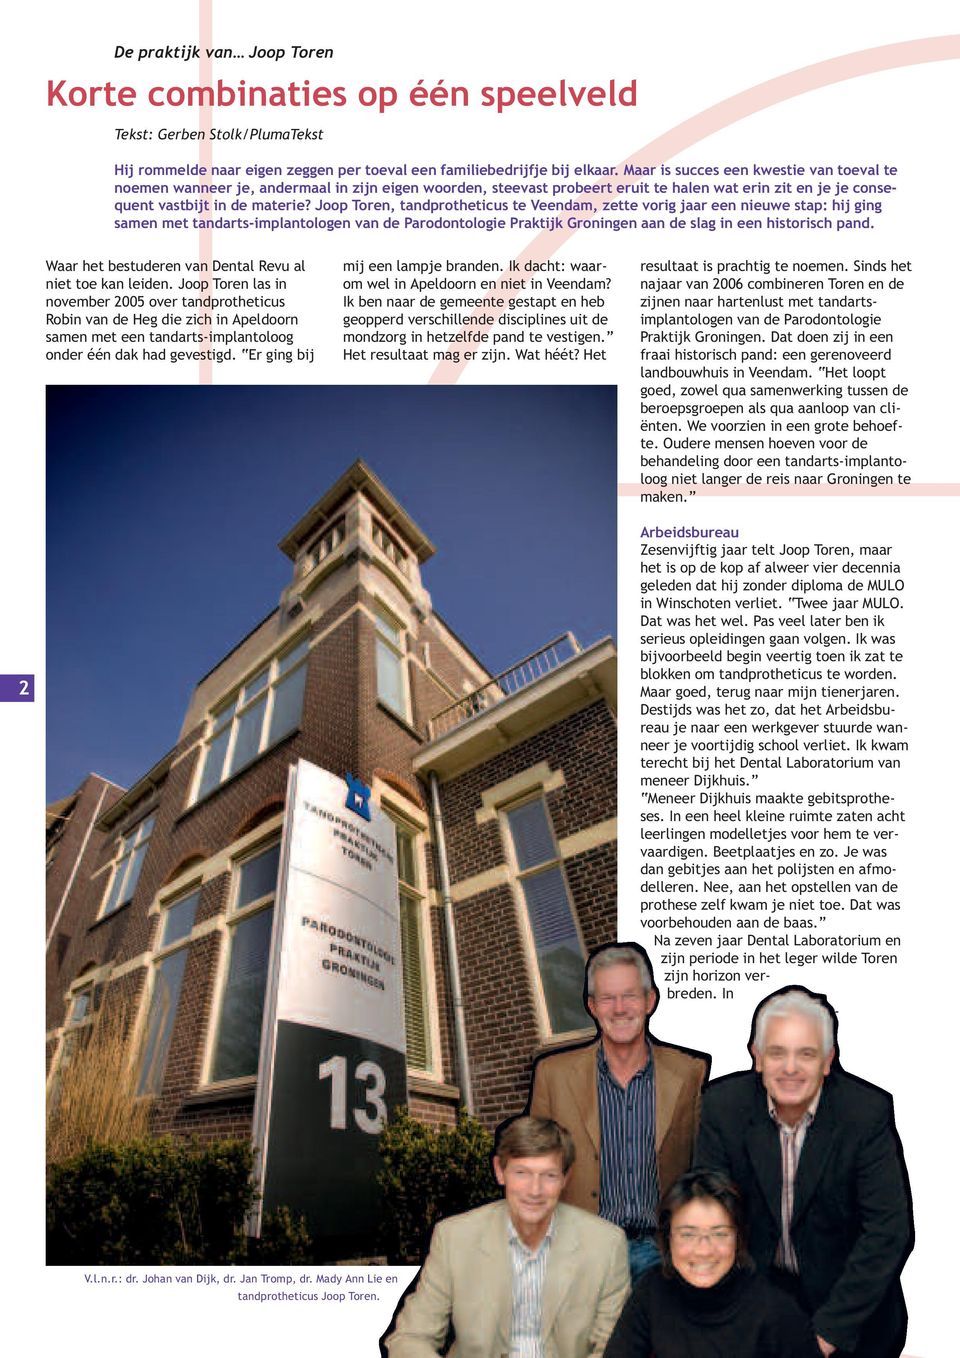 Joop Toren, tandprotheticus te Veendam, zette vorig jaar een nieuwe stap: hij ging samen met tandarts-implantologen van de Parodontologie Praktijk Groningen aan de slag in een historisch pand.